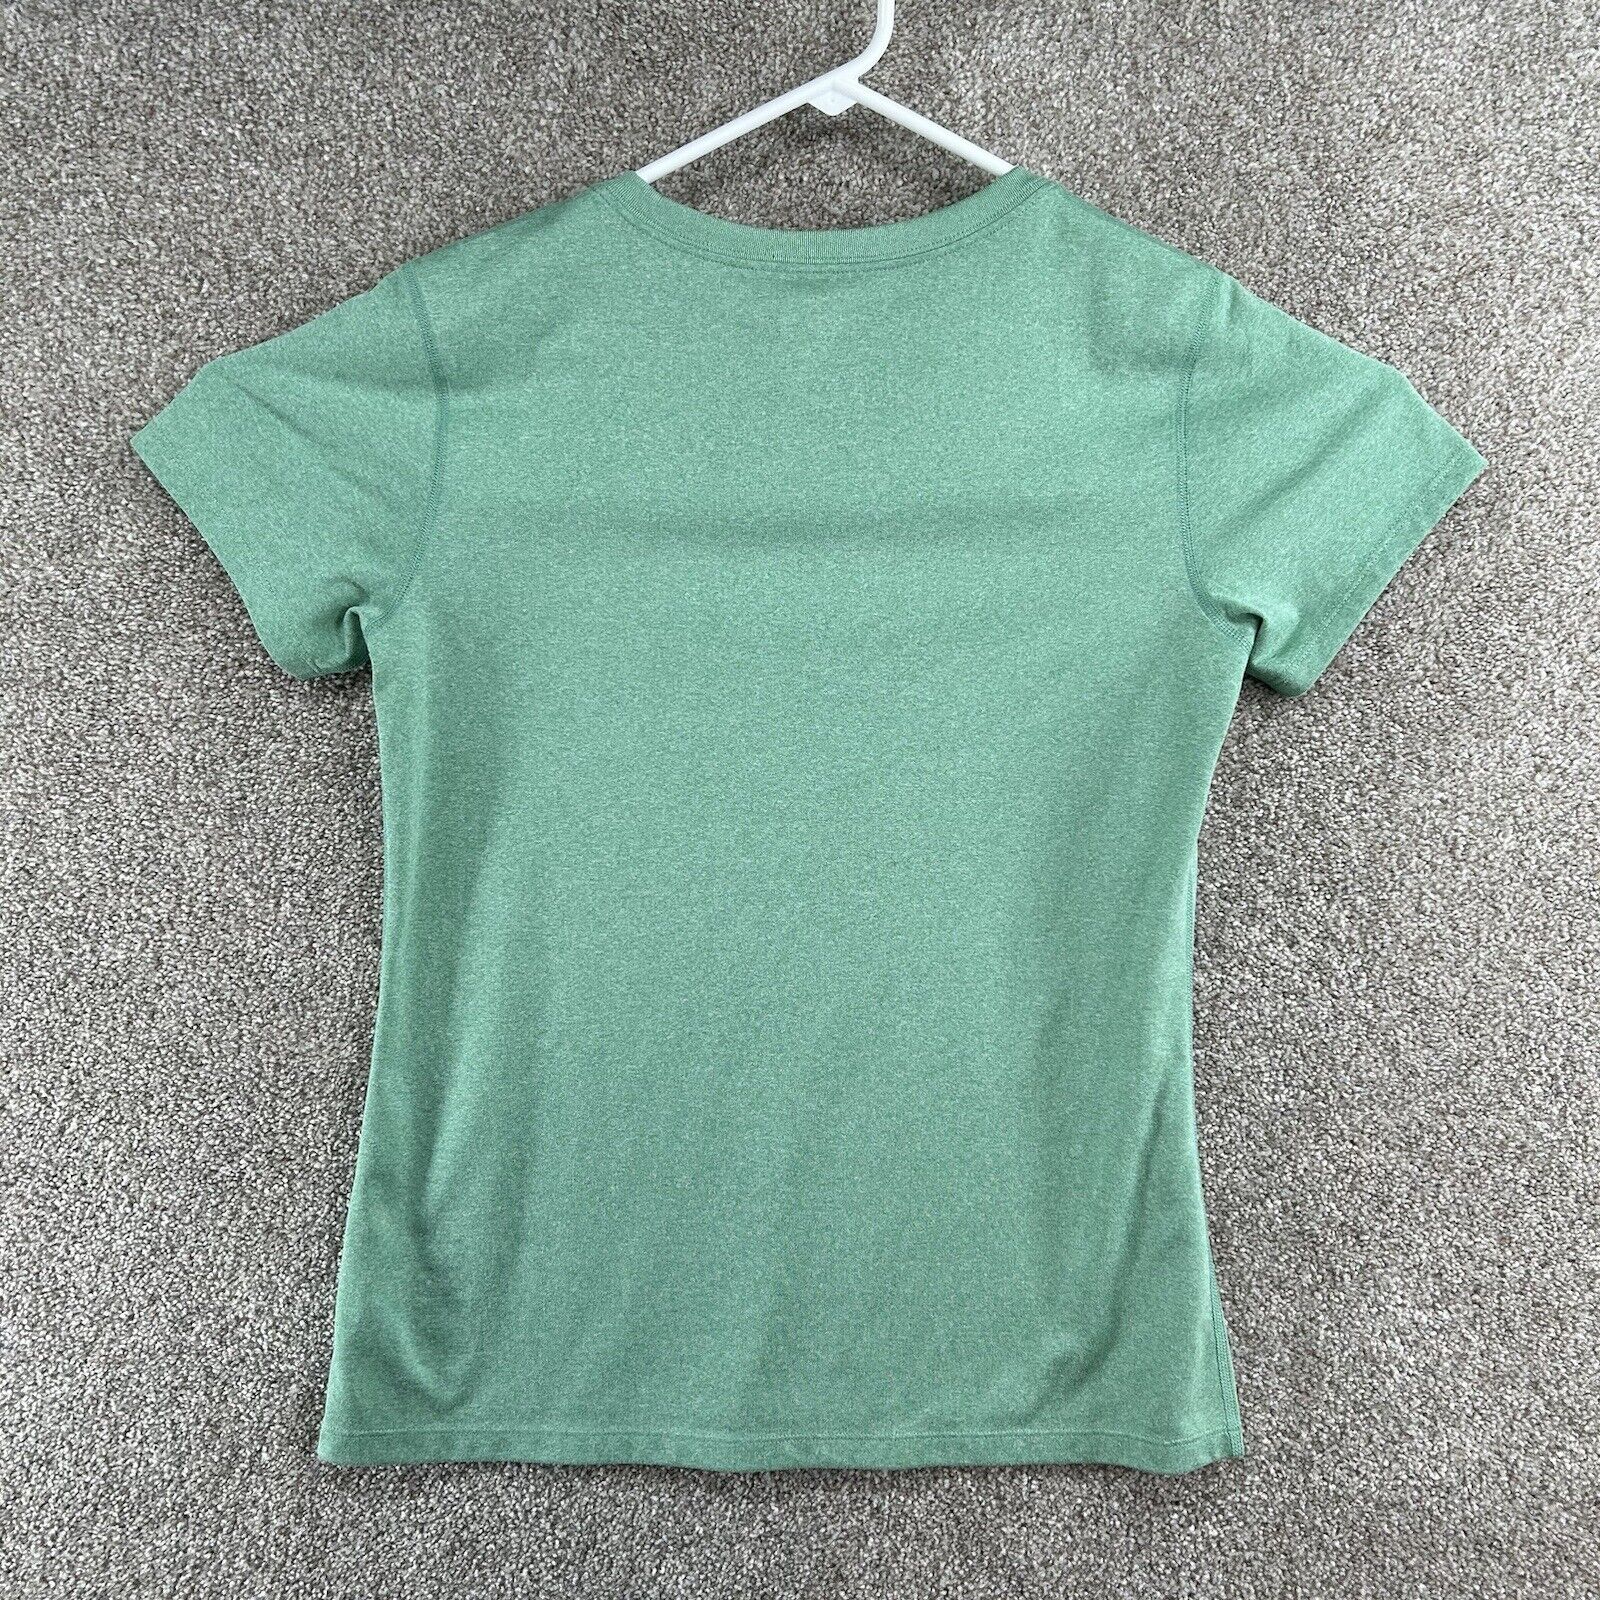 REI Co-op Women's Shirt Size Medium Green Short S… - image 4